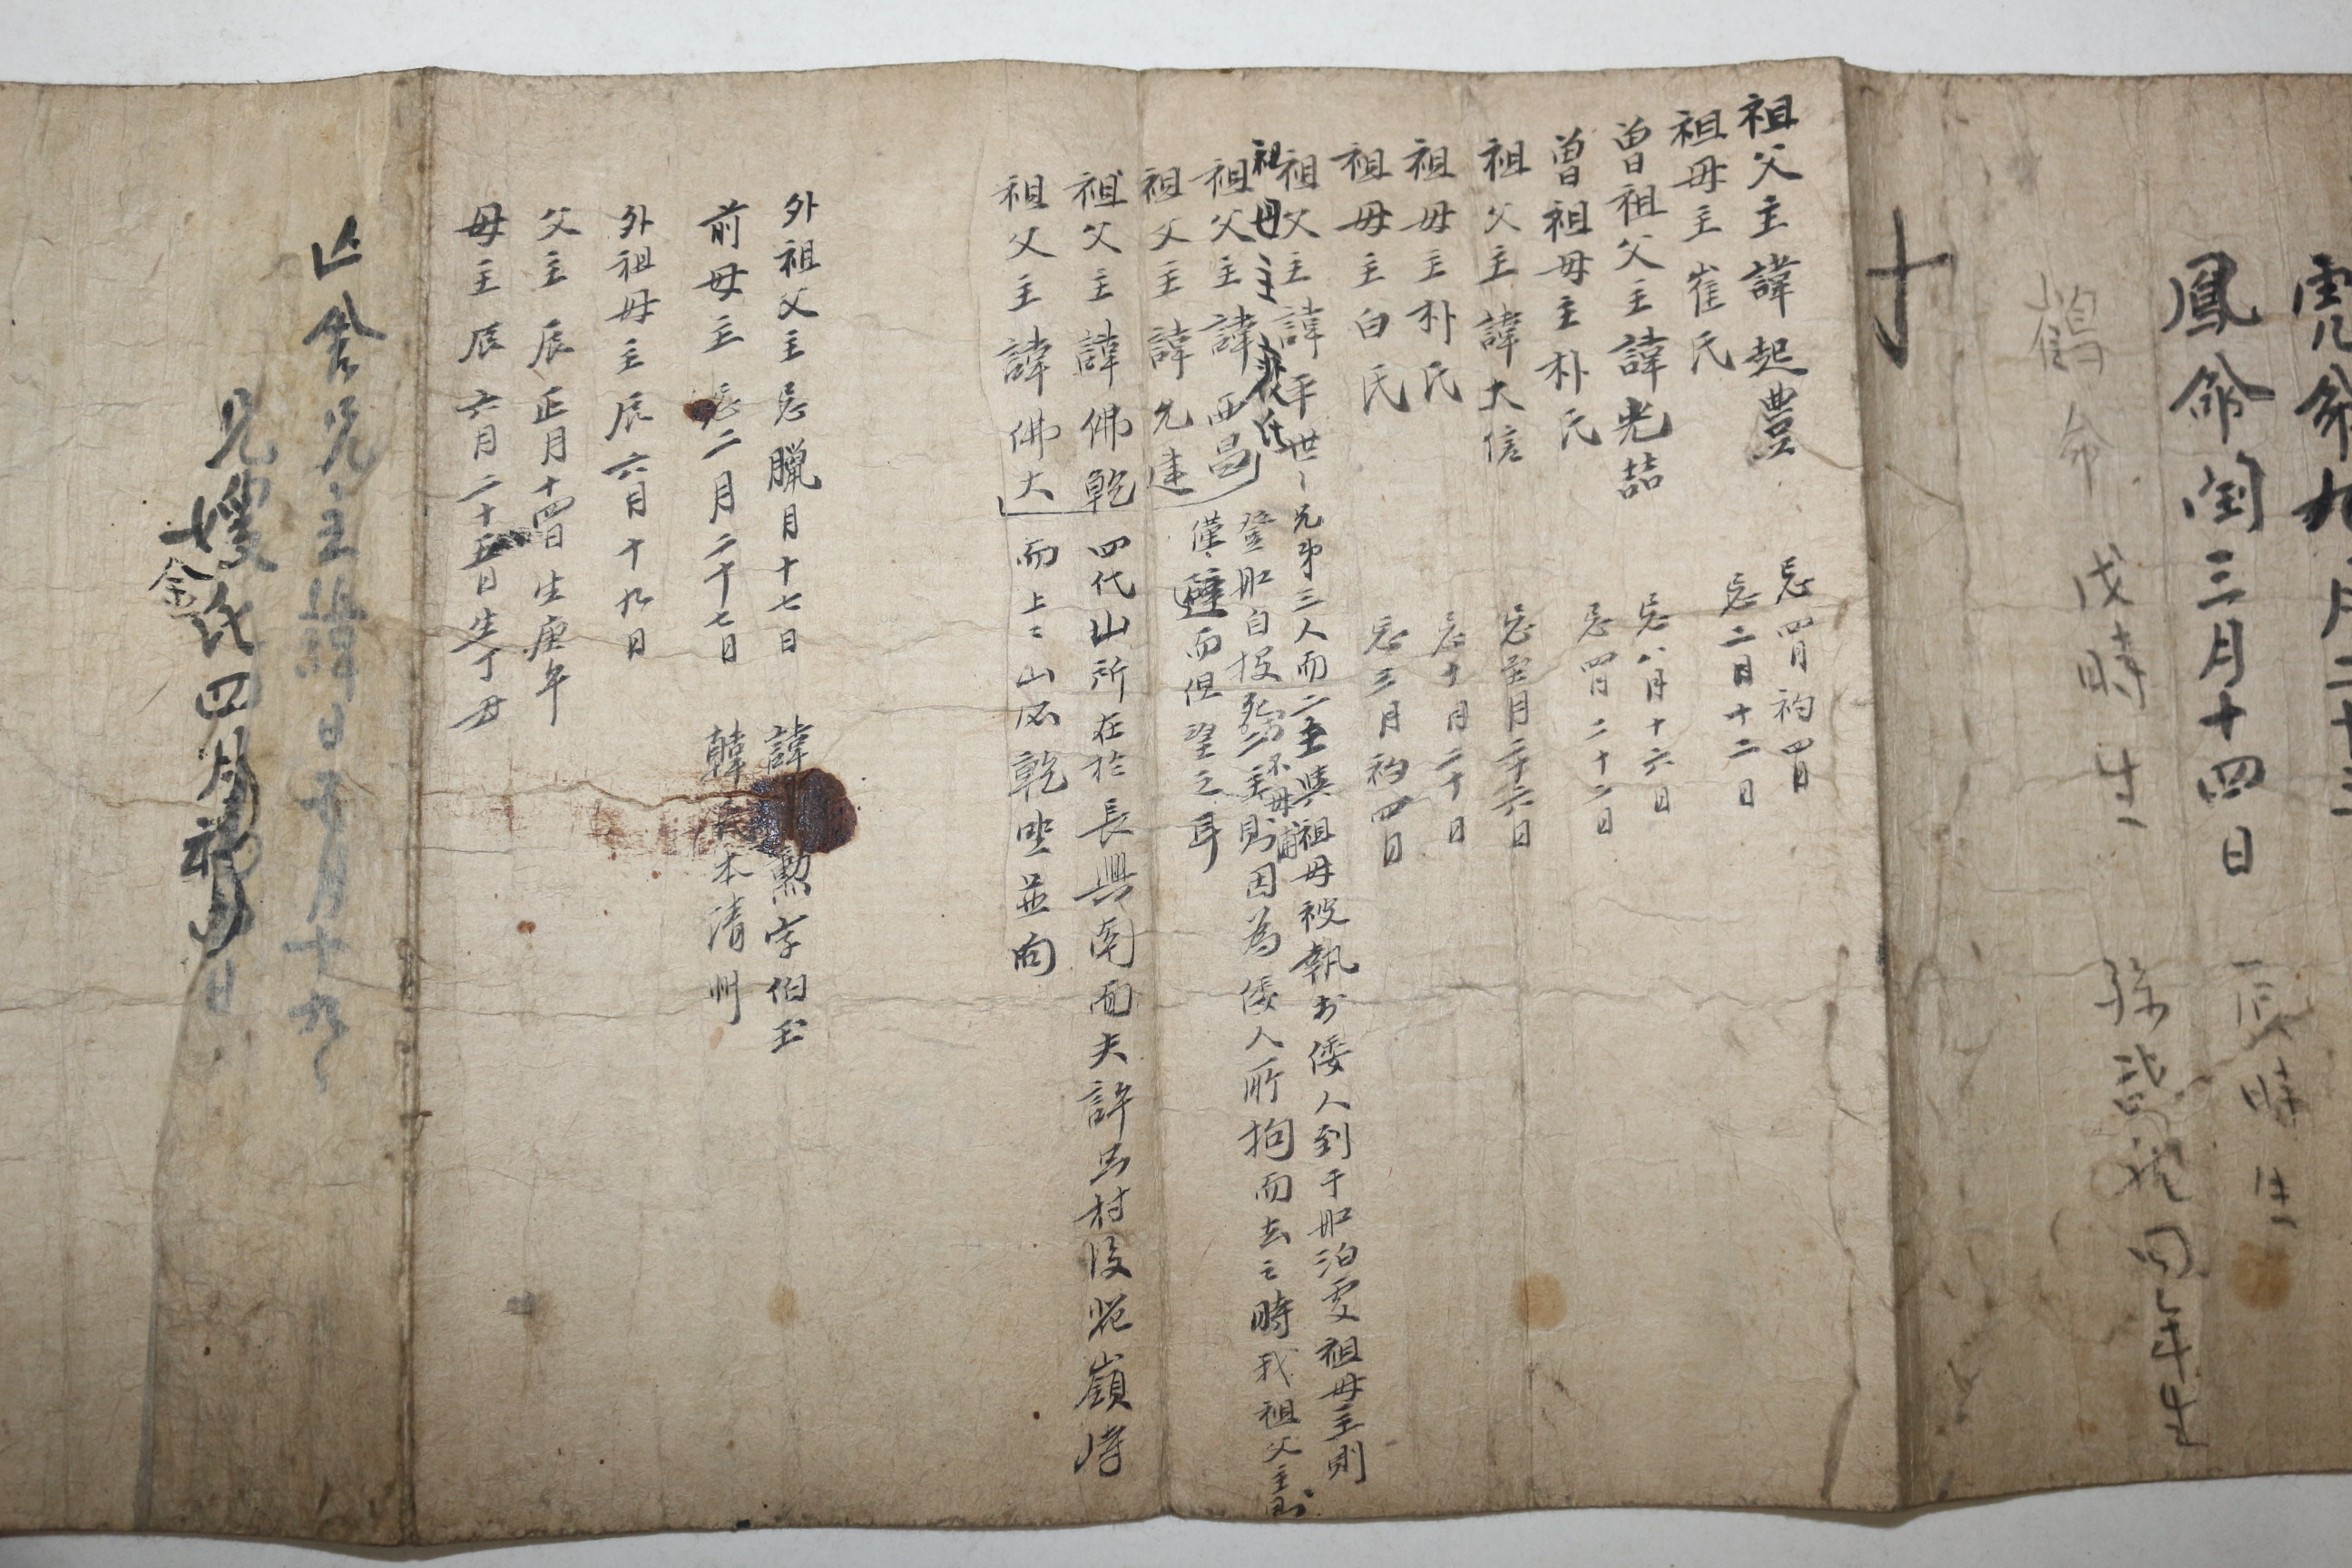 1689년 필사기가 있는 집안대소사 기일 필사절첩본 일기록